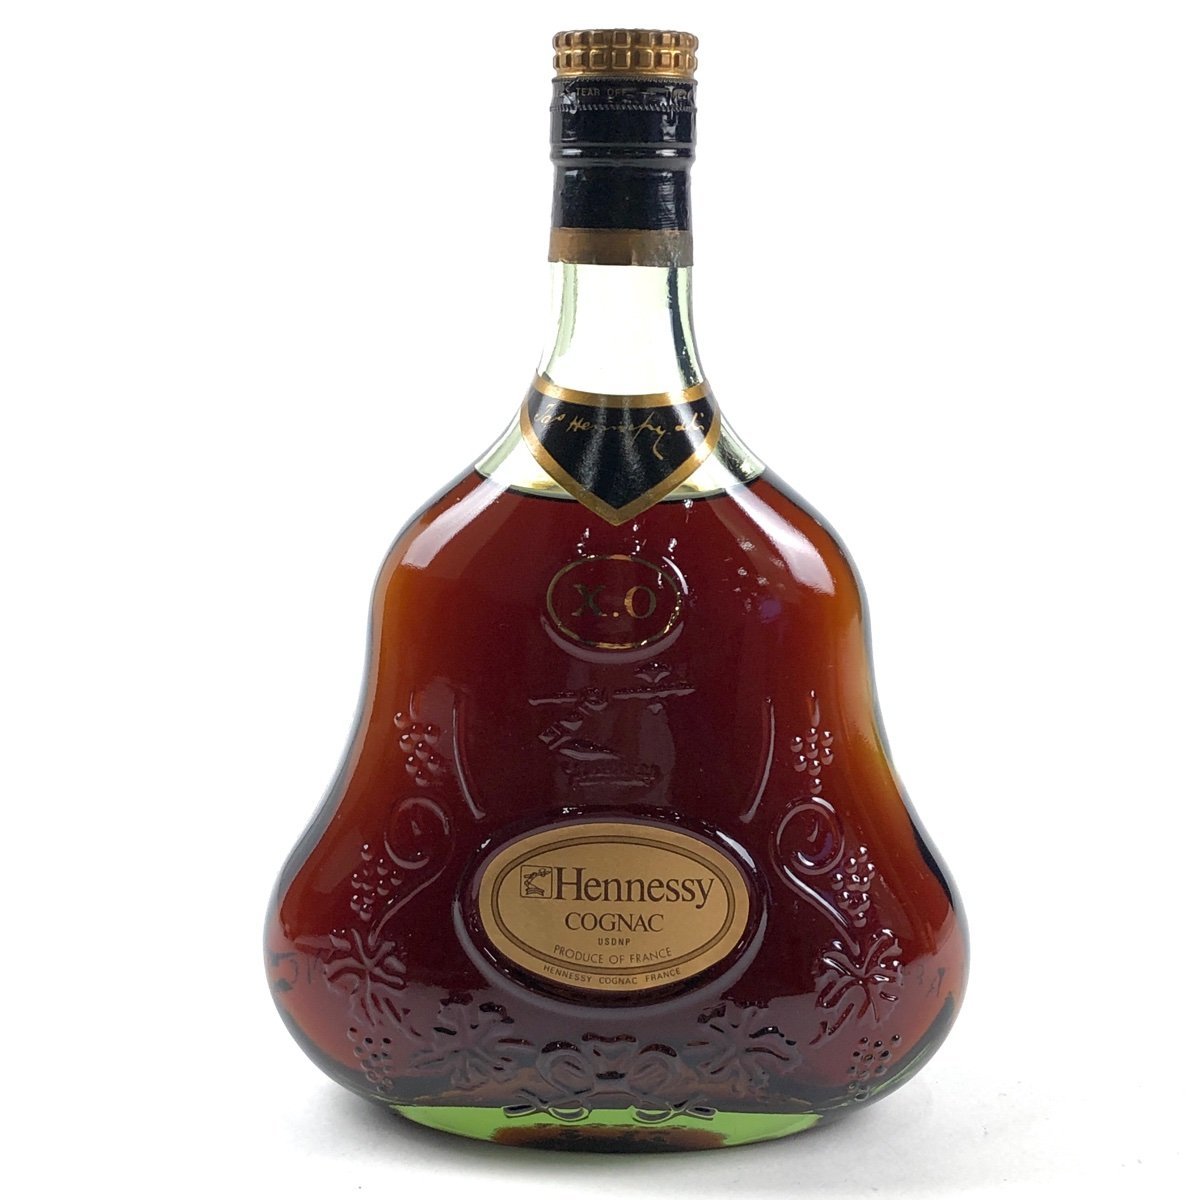 ヘネシー Hennessy XO 金キャップ グリーンボトル 700ml ブランデー